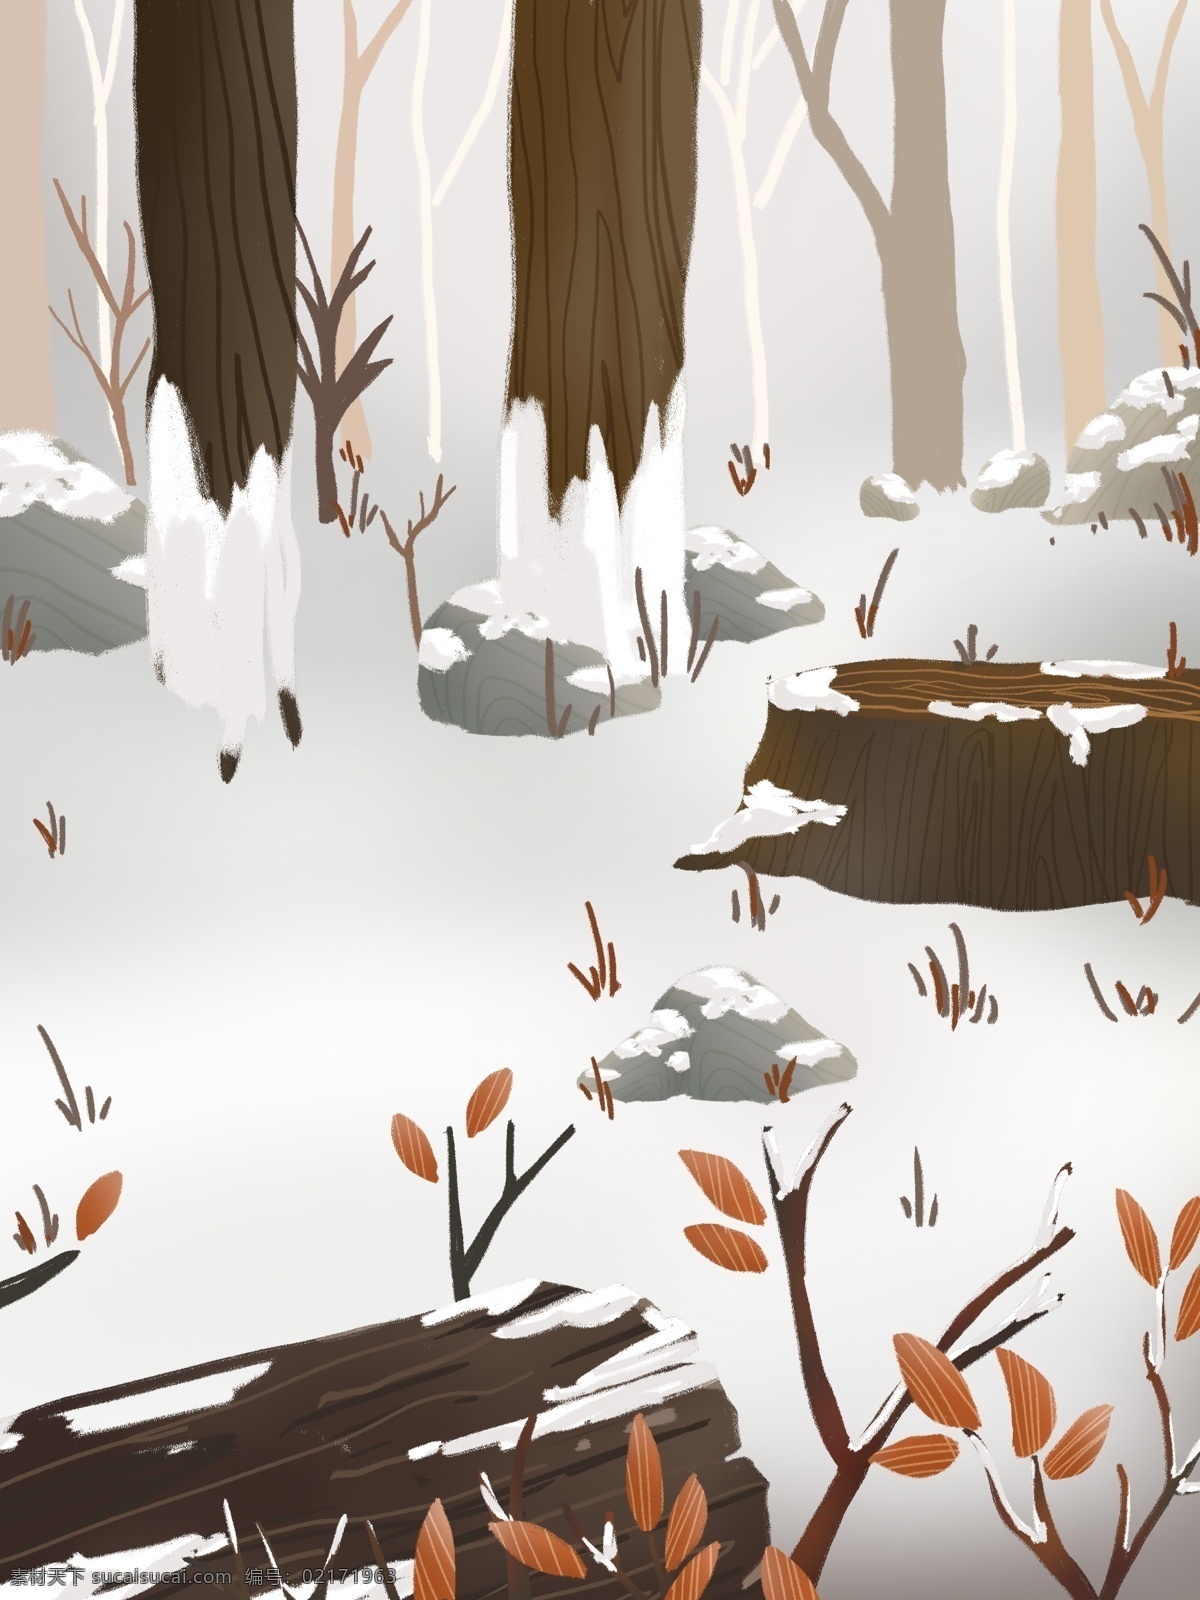 手绘 枯木 雪景 背景 广告背景 树木背景 背景素材 雪白背景 枯木树枝